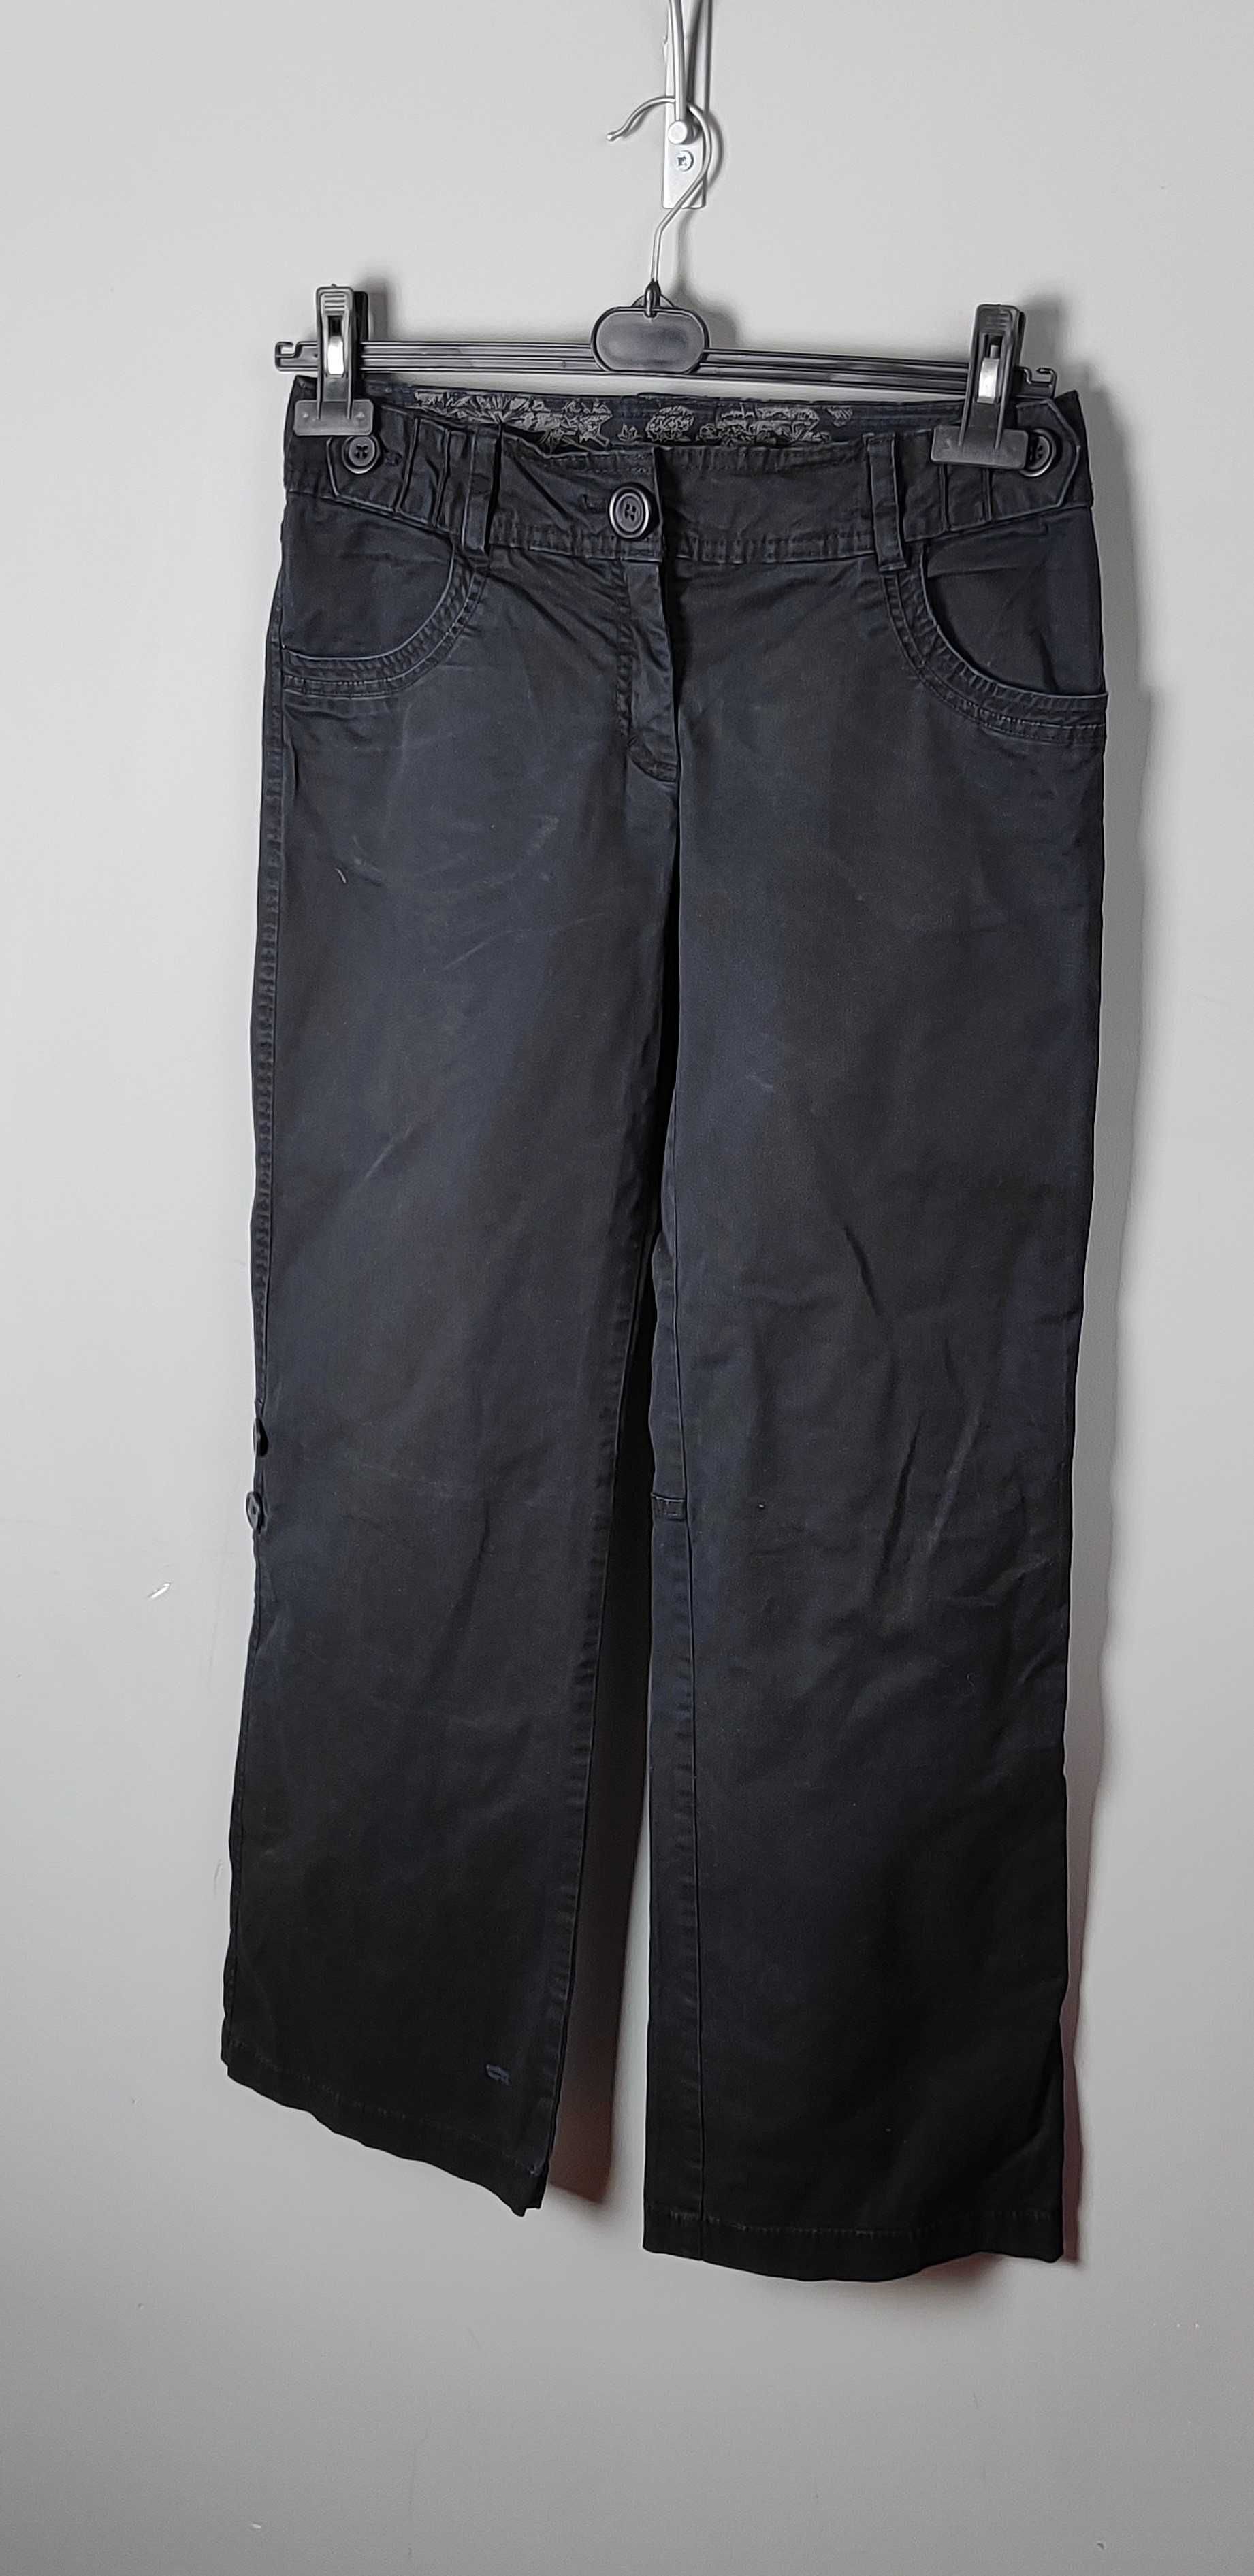 Spodnie czarne szerokie podwijane nogawki na guziki damskie HM 38